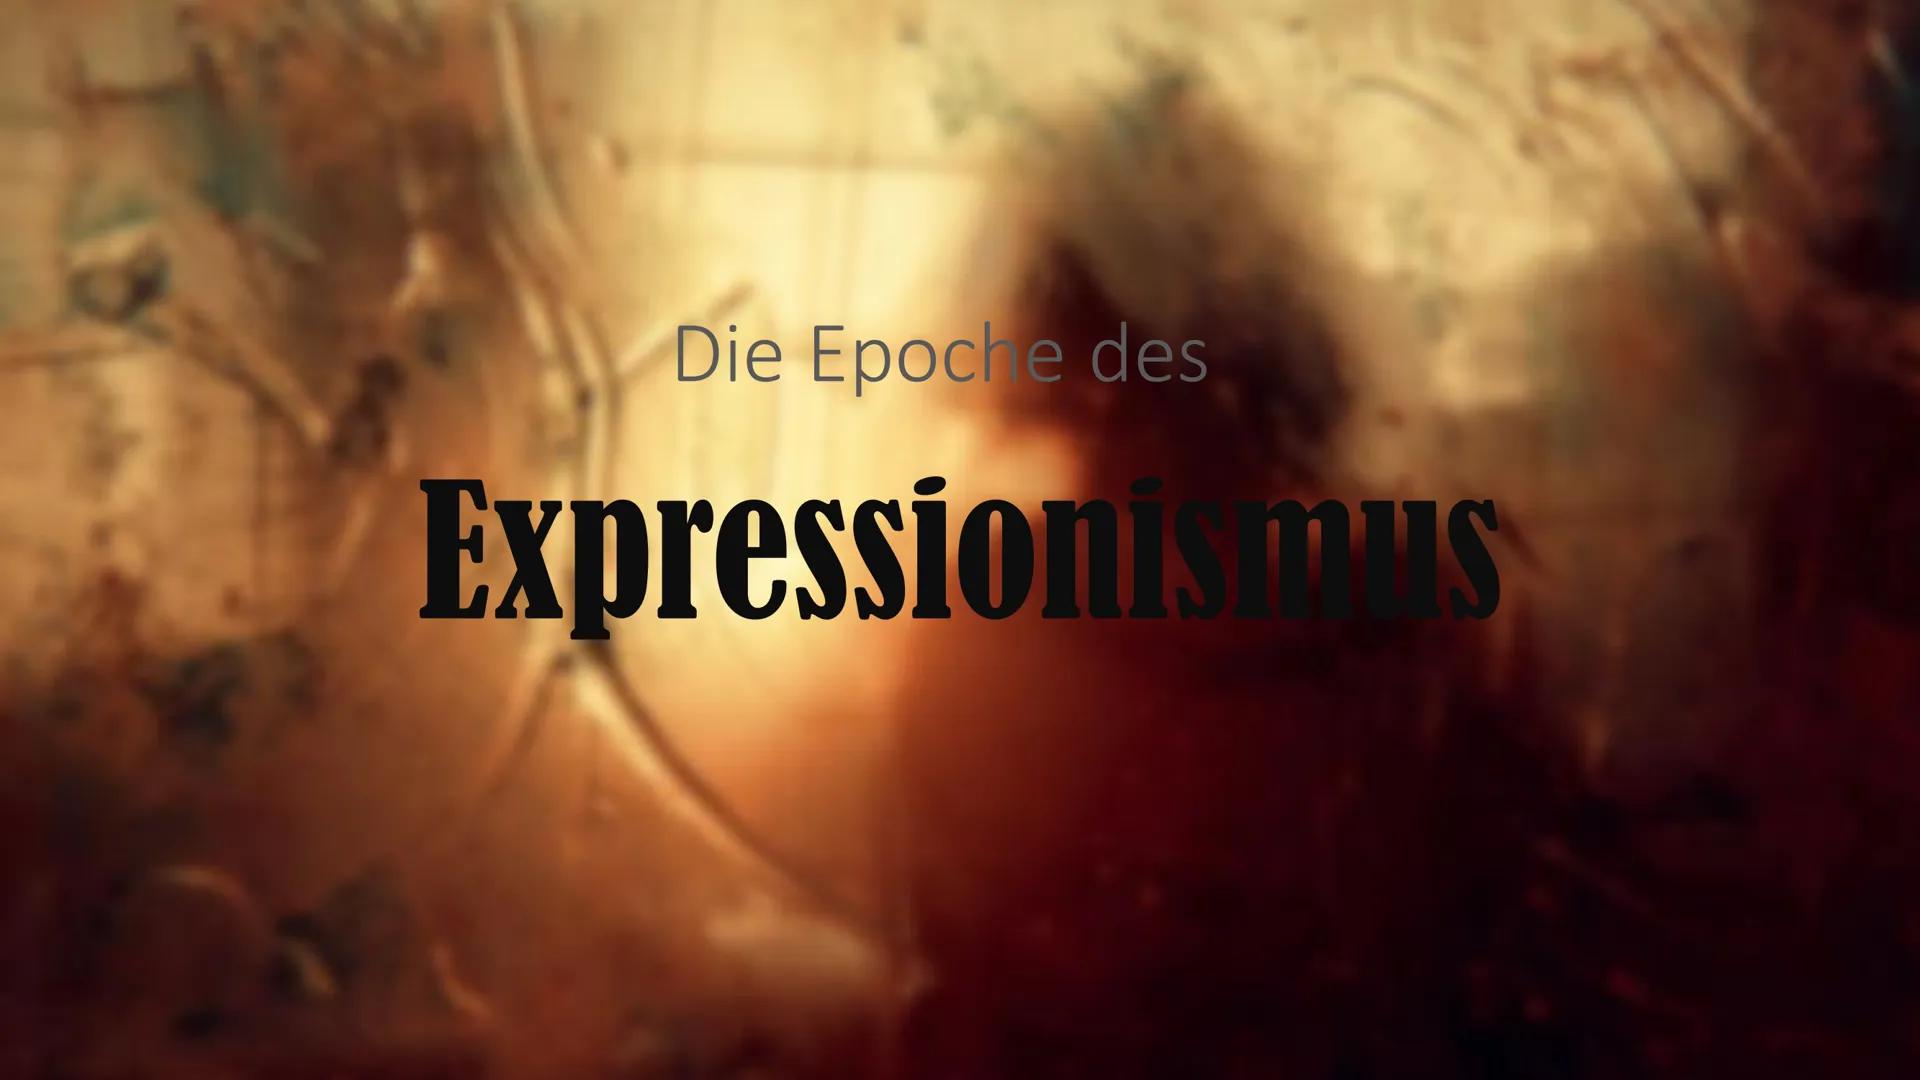 Die Epoche des
Expressionismus Quellen
https://www.inhaltsangabe.de/wissen/literaturepoche/expressionismus/?amp#historischer-
hintergrund
ht